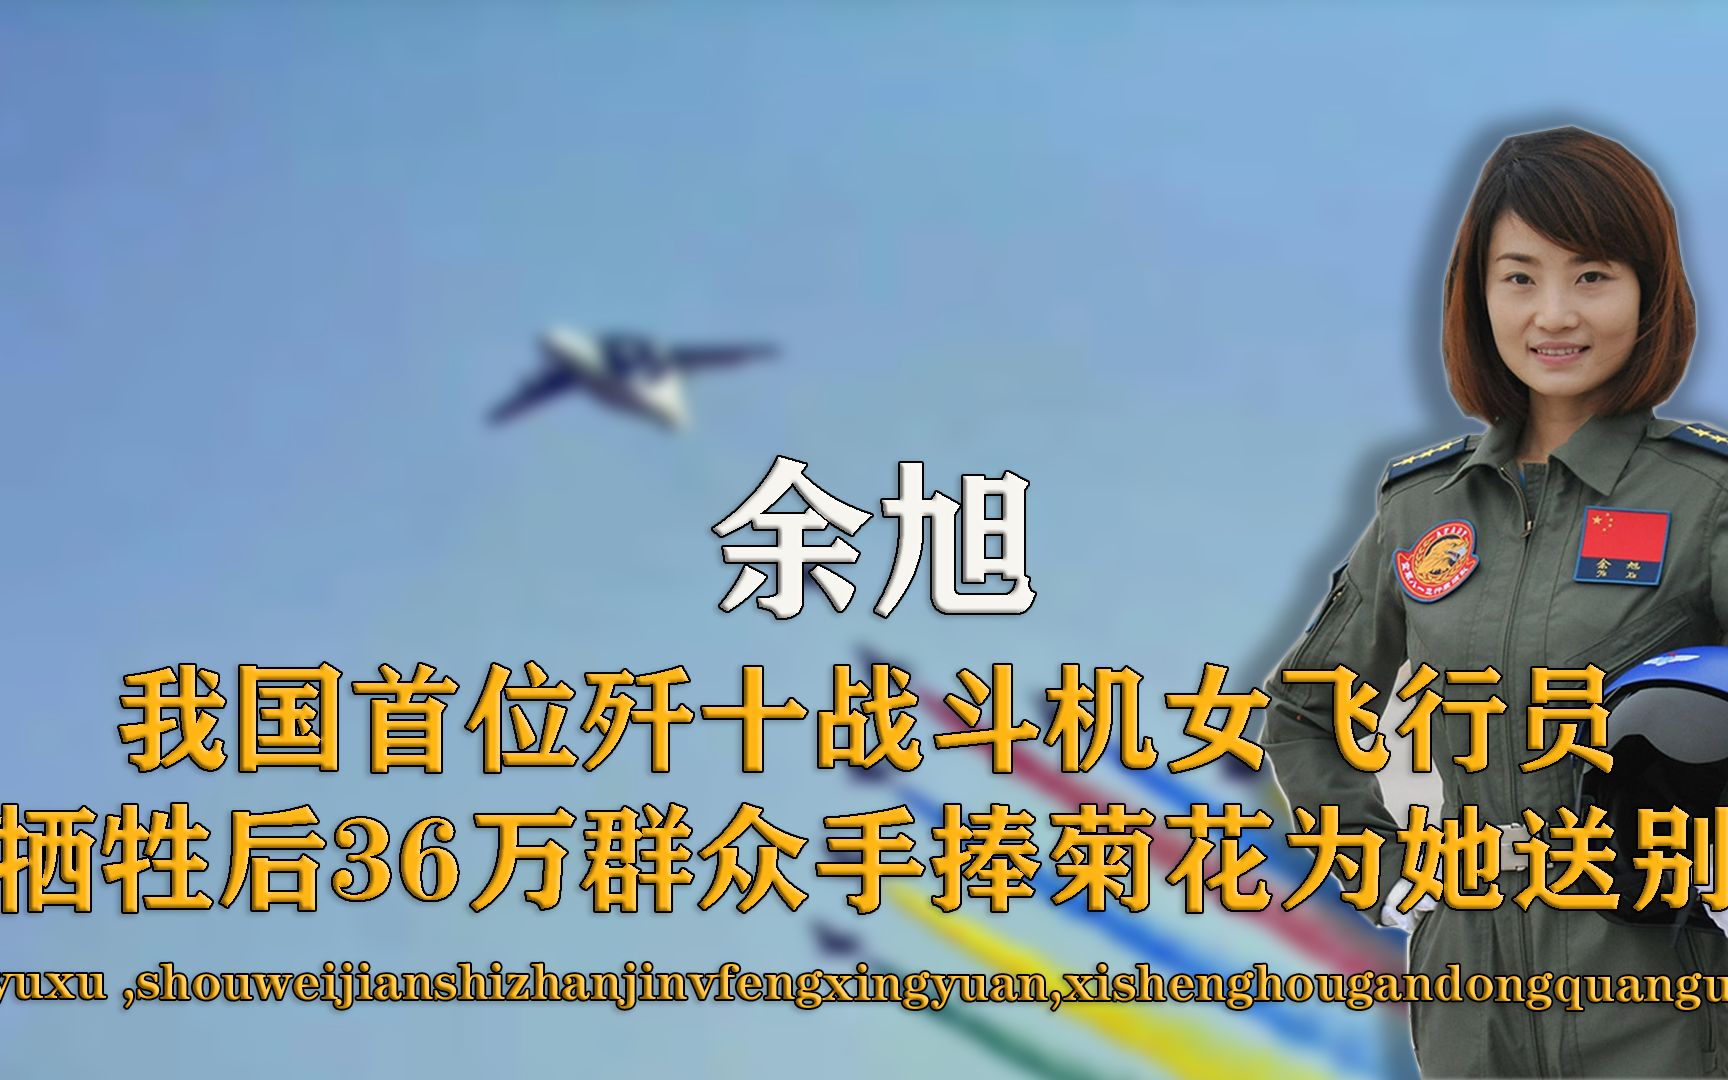 中国首个歼-10女飞行员牺牲一周年 回顾她最美瞬间_综合_图片_航空圈